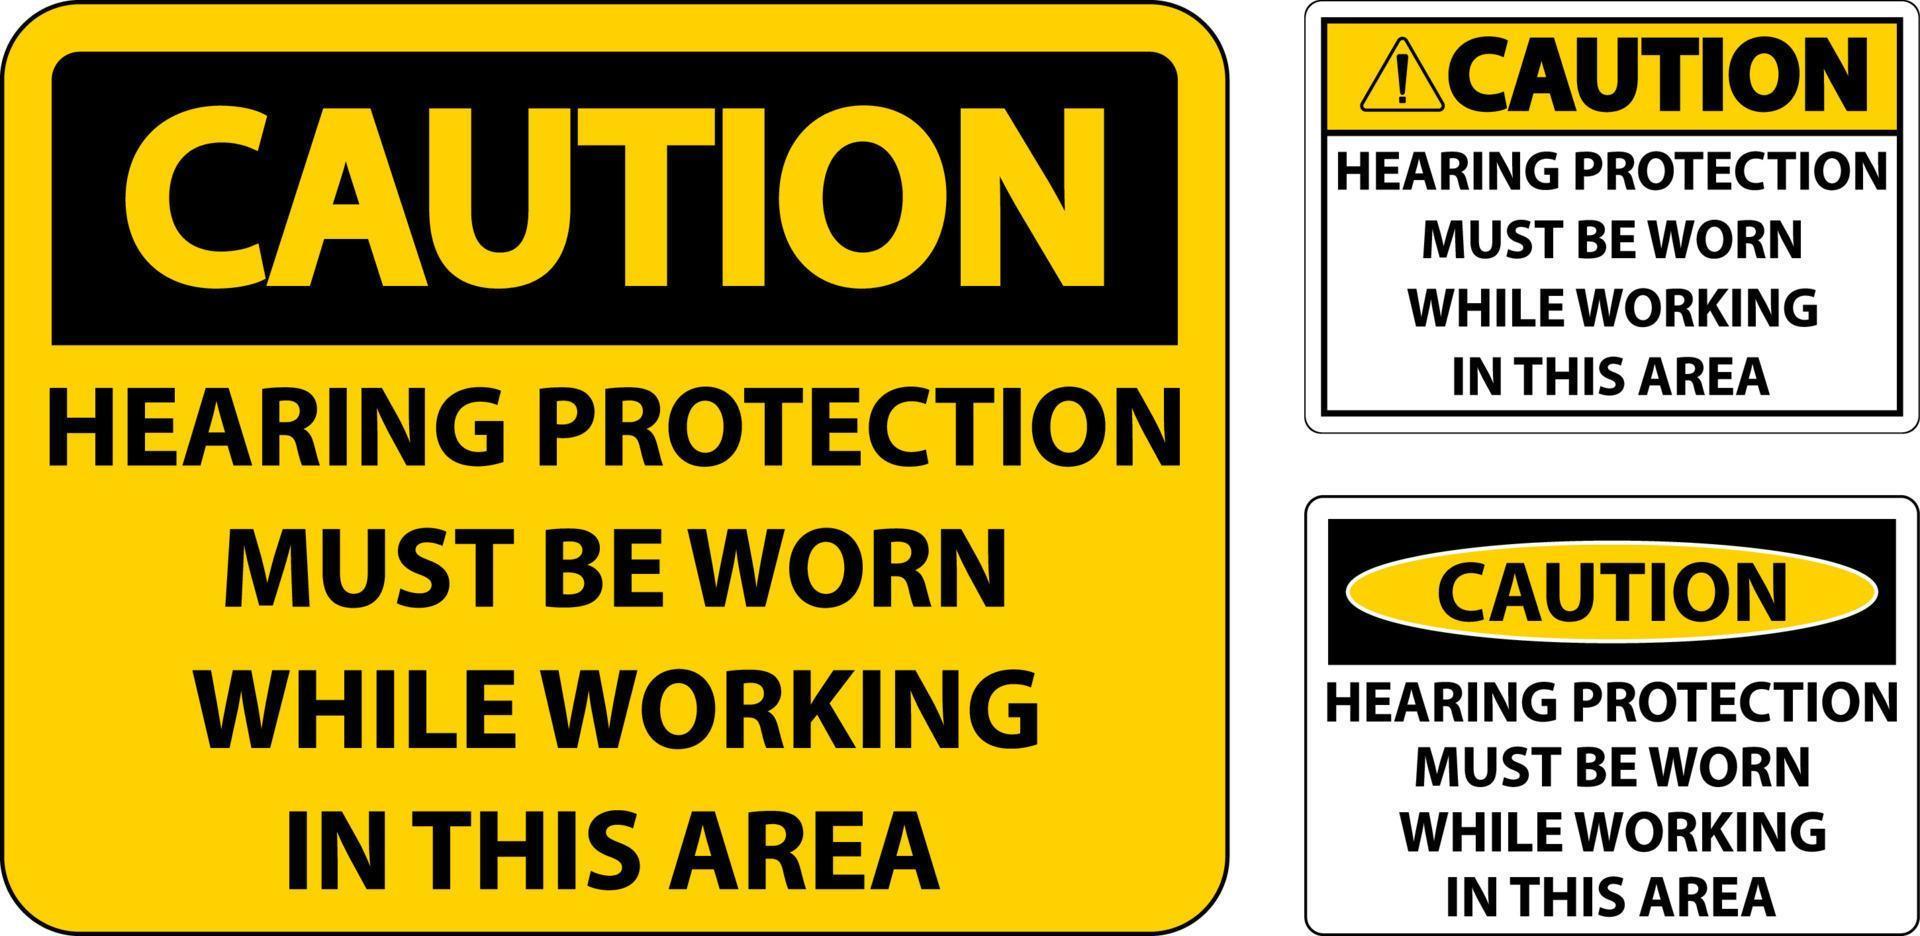 Precaución La protección auditiva debe llevarse un cartel sobre fondo blanco. vector